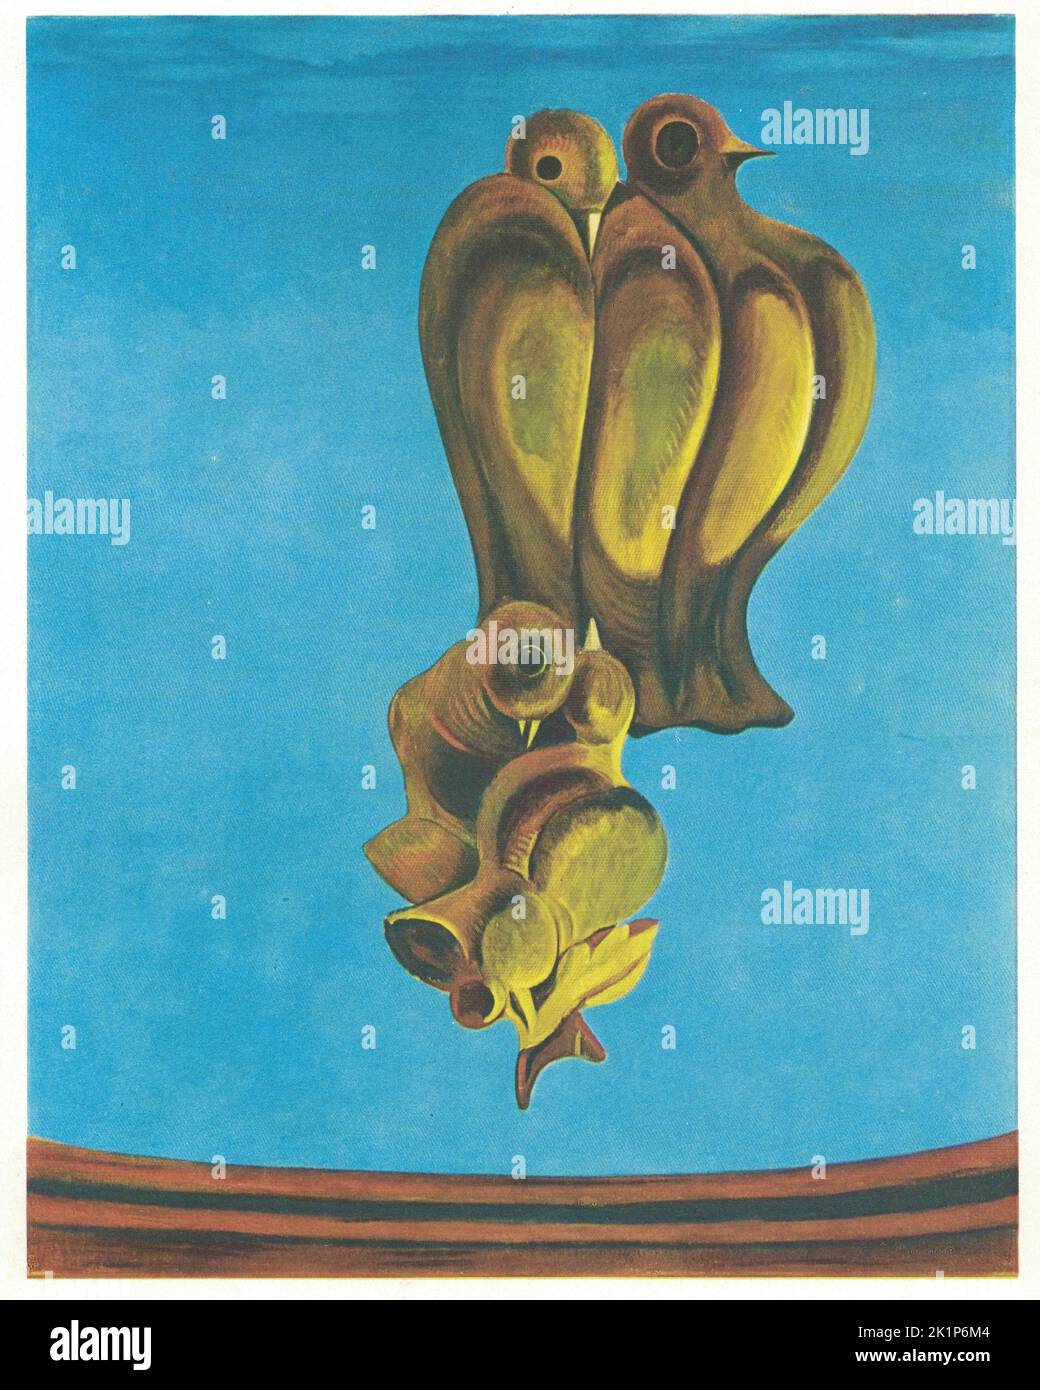 Das Vogeldenkmal, 1927. Gemälde von Max Ernst. Max Ernst (2. April 1891 – 1. April 1976) war ein deutscher Maler, Bildhauer, Grafiker, Grafiker und Dichter (1948 US-Amerikaner und 1958 Franzosen). Als produktiver Künstler war Ernst ein erster Pionier der Dada-Bewegung und des Surrealismus in Europa. Er hatte keine formale künstlerische Ausbildung, aber seine experimentelle Haltung gegenüber der Herstellung von Kunst führte zu seiner Erfindung der Frottage – einer Technik, die Bleistiftabreibungen von strukturierten Objekten und Reliefflächen verwendet, um Bilder zu schaffen – und der Grattage, einer analogen Technik, bei der Farbe über canv geschabt wird Stockfoto